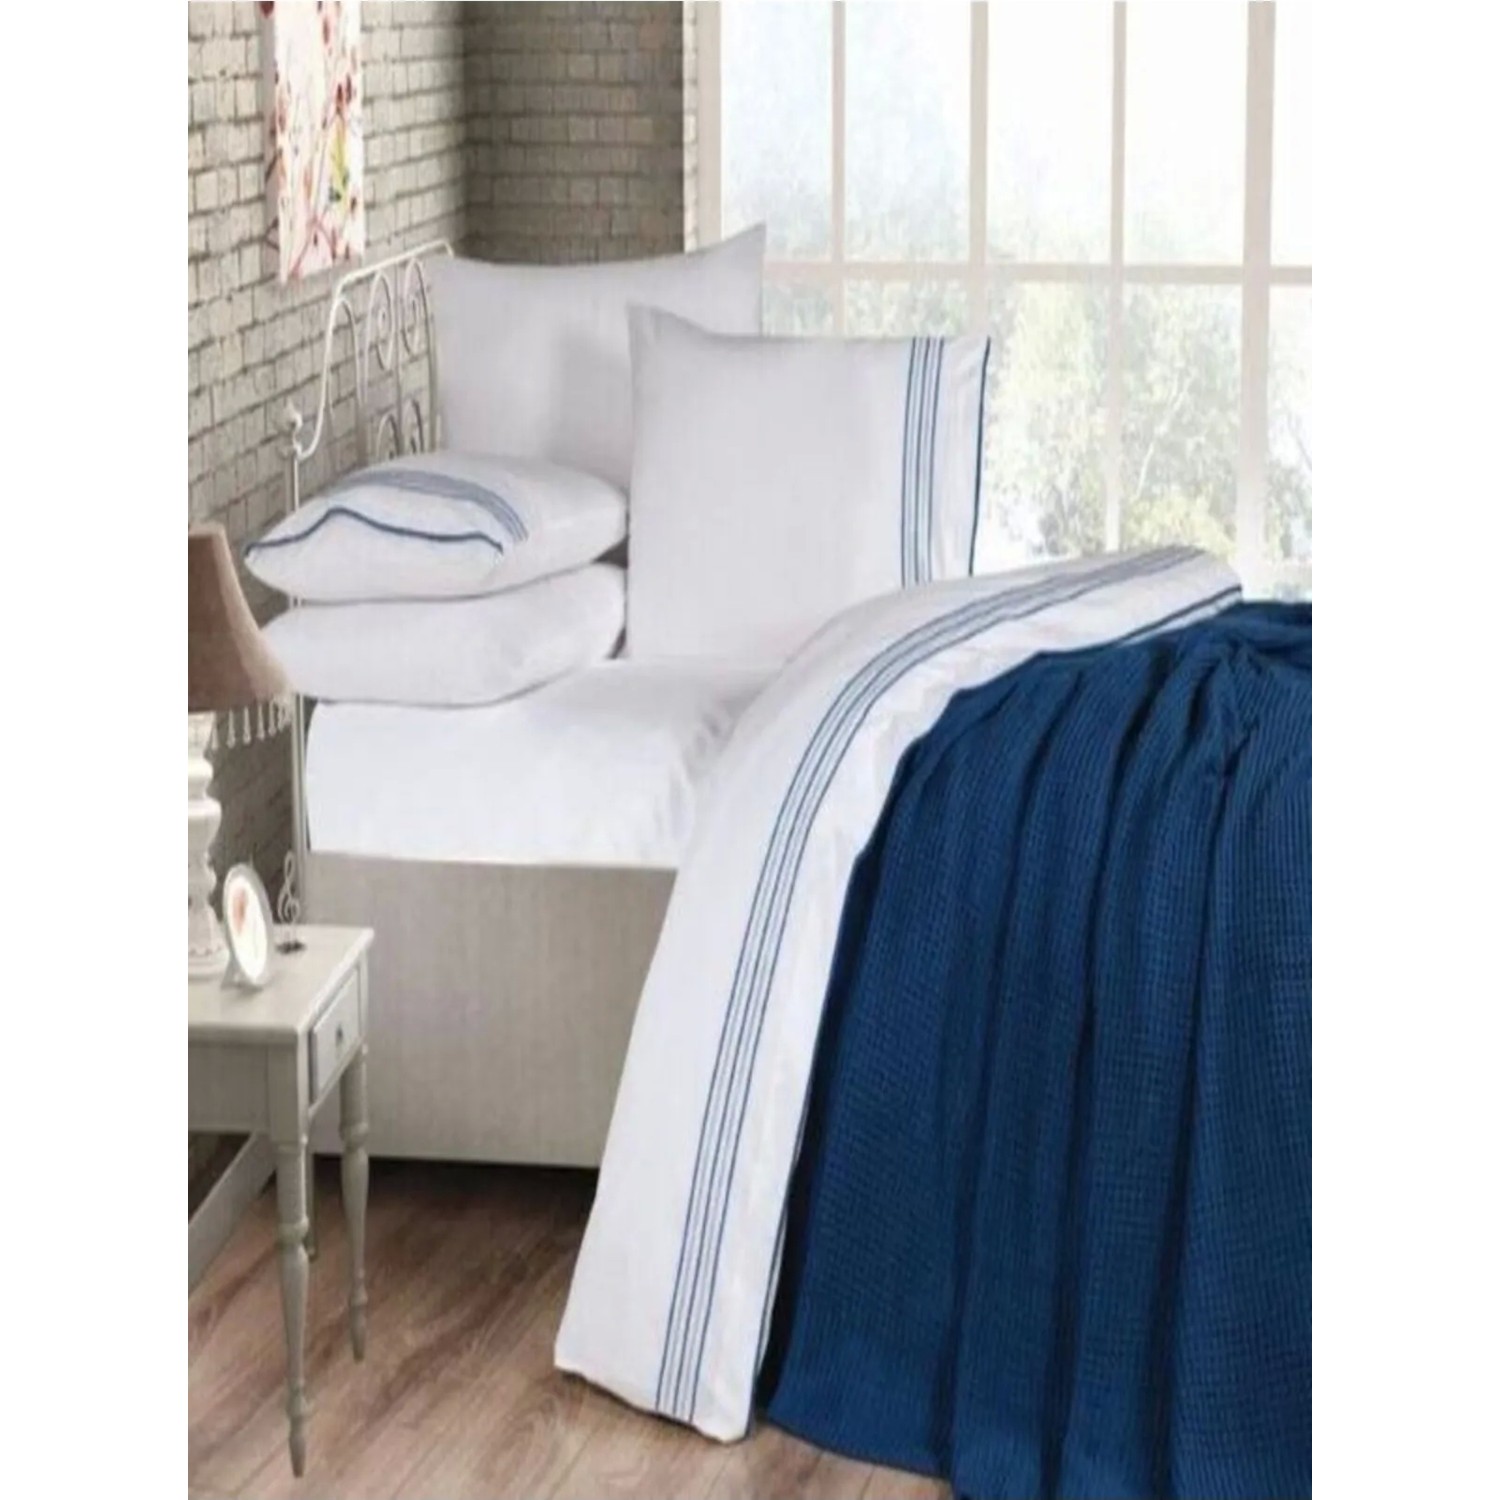 Комплект постельного белья Свадебный комплект трикотажных одеял Ozdilek Prime (7 предметов) — темно-синий